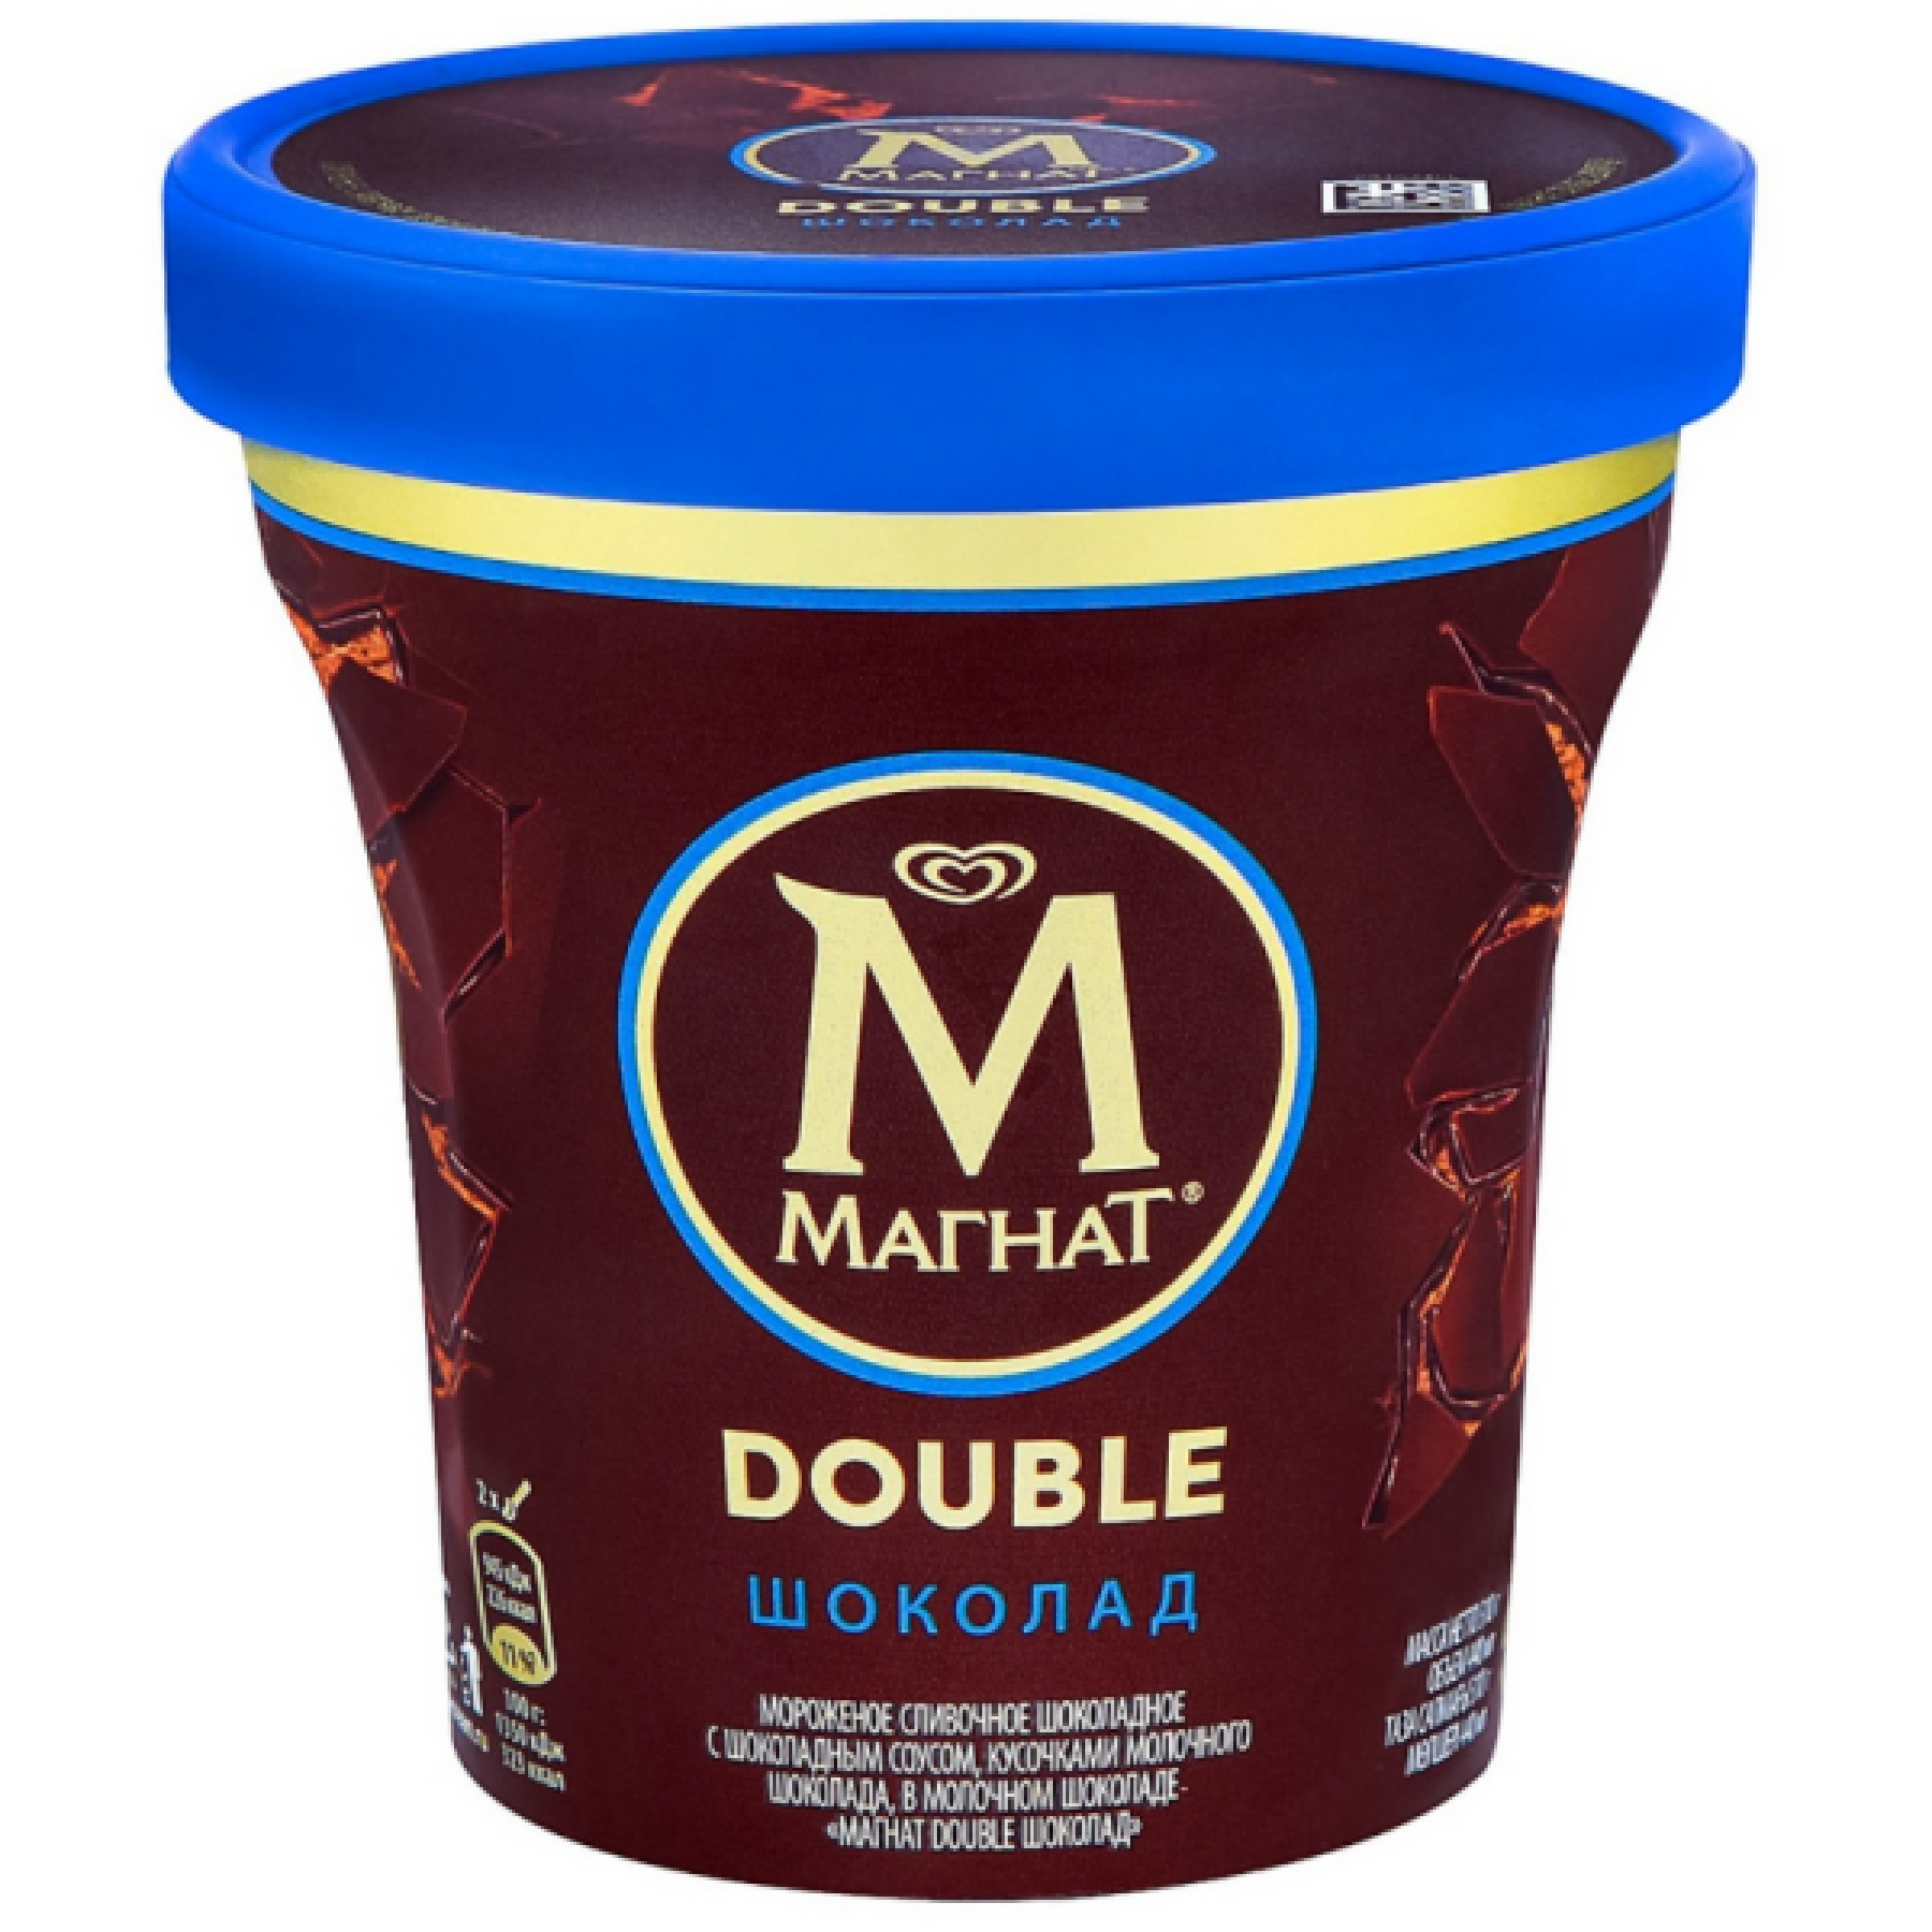 Мороженое МАГНАТ Double шоколад, 310 г